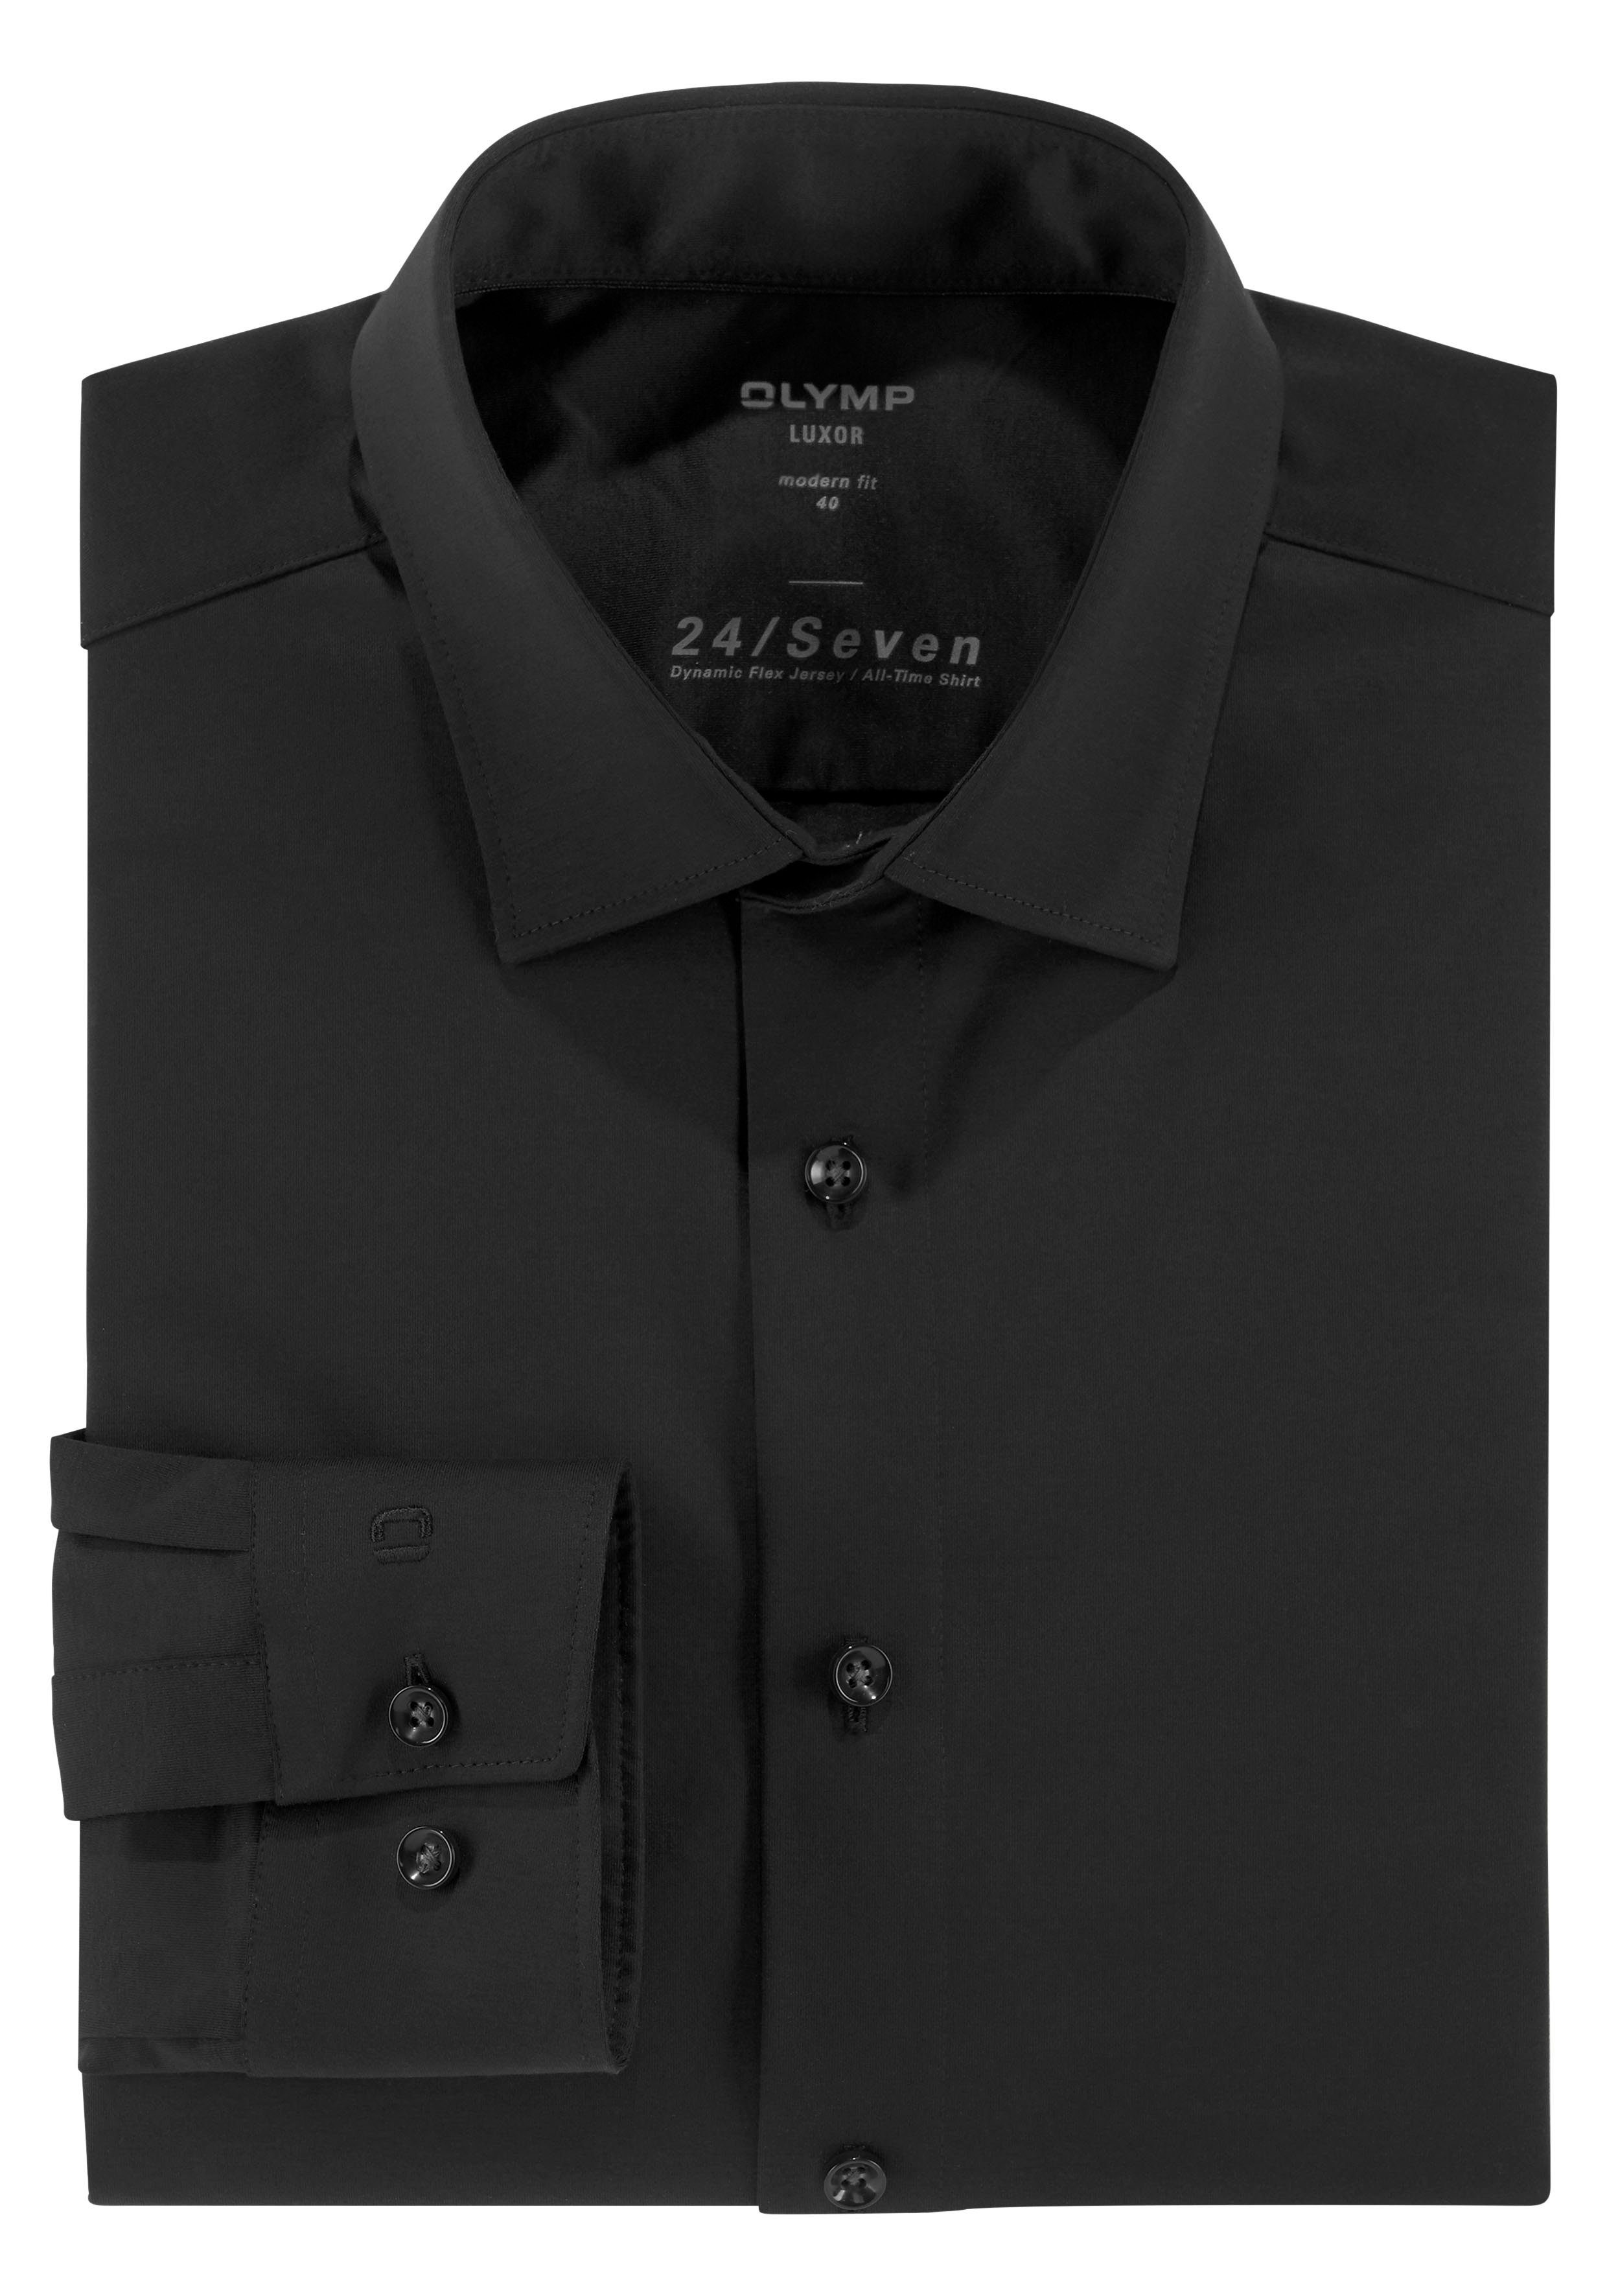 Langarmhemd mit 24/Seven Materialeigenschaften schwarz geruchshemmenden OLYMP Luxor